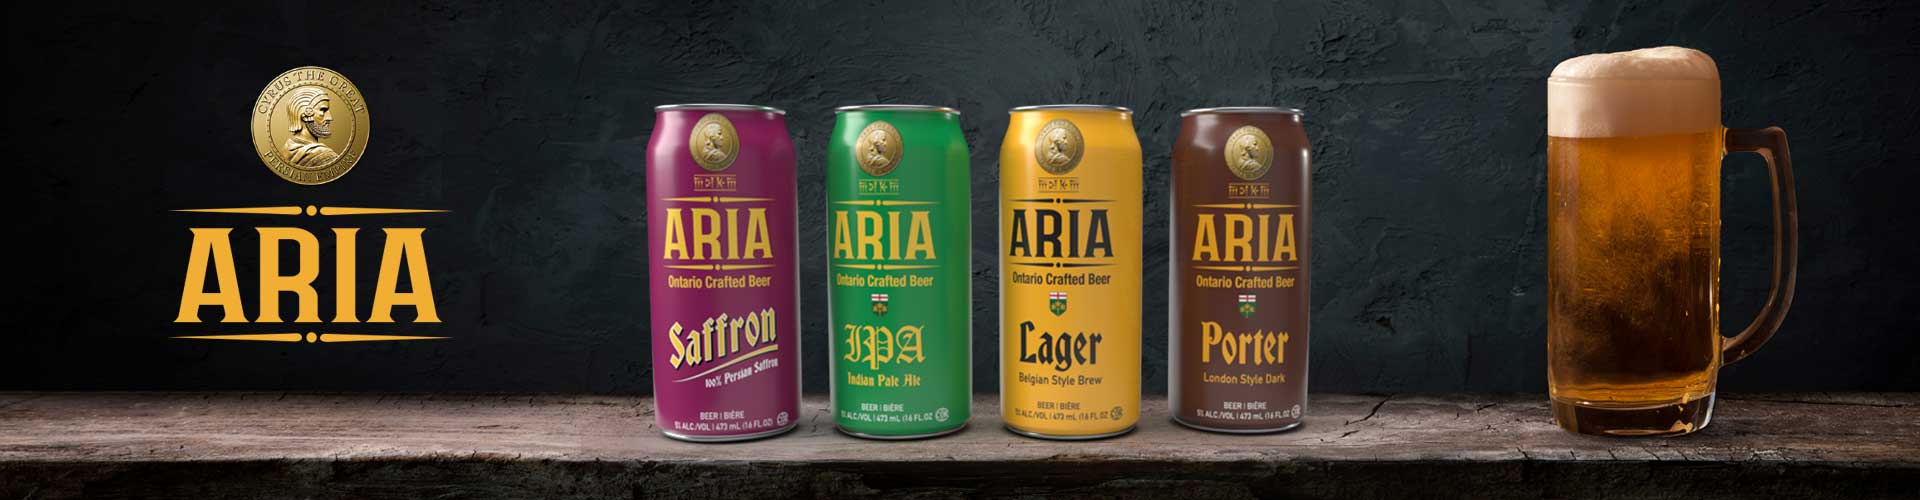 Aria Beer